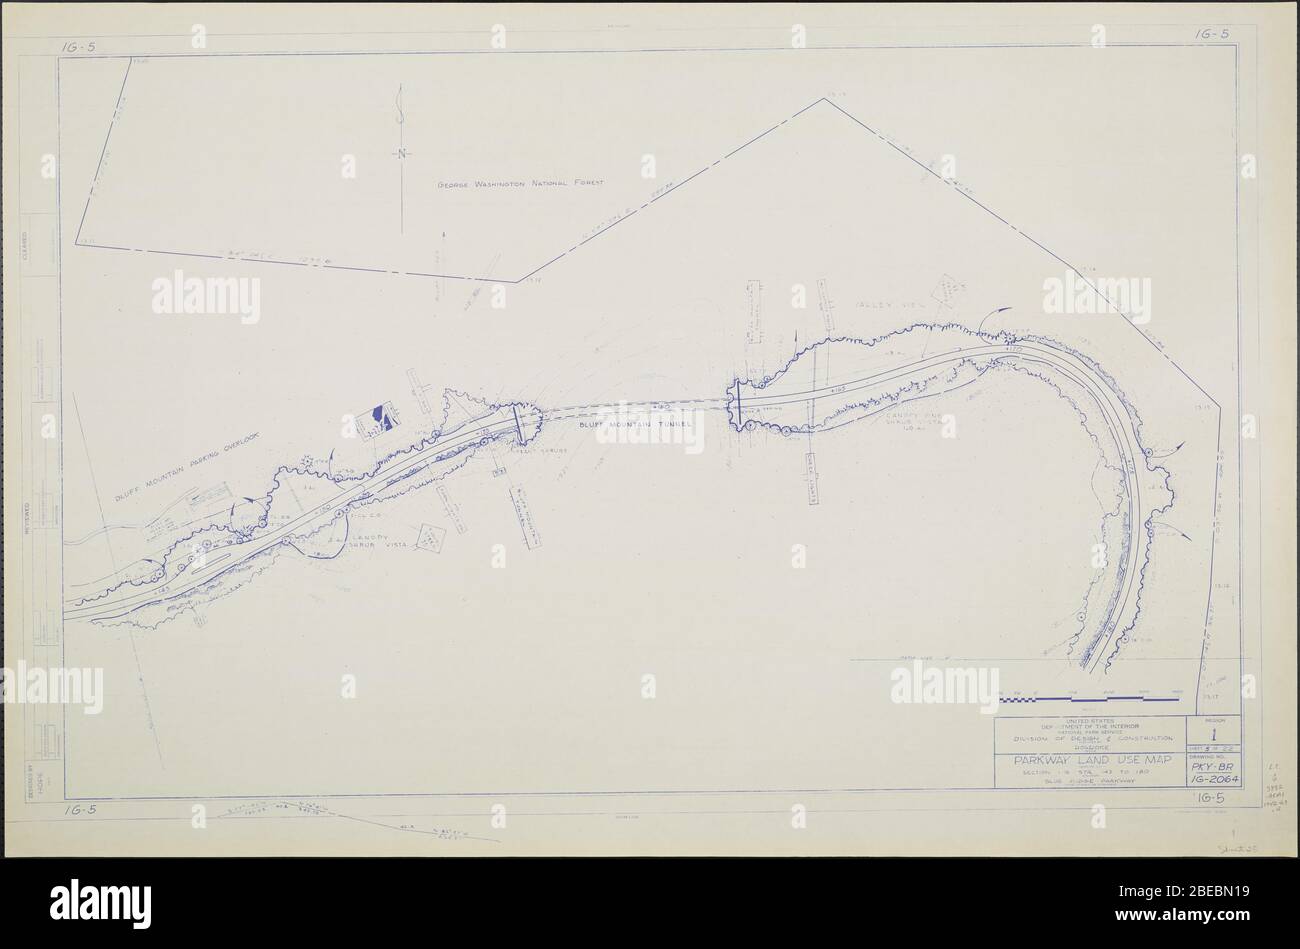 'Blue Ridge Parkway, Region 1 Blatt 5; EINE Karte des Blue Ridge Parkway mit Details über die nahe gelegenen Bäume, Sträucher und Sämlinge. Beinhaltet den Bluff Mountain Tunnel und den Blick auf den Bluff Mountain Parkplatz. Zeichnung Nr. 1G-5. Skala 1=100'.; ' Stockfoto